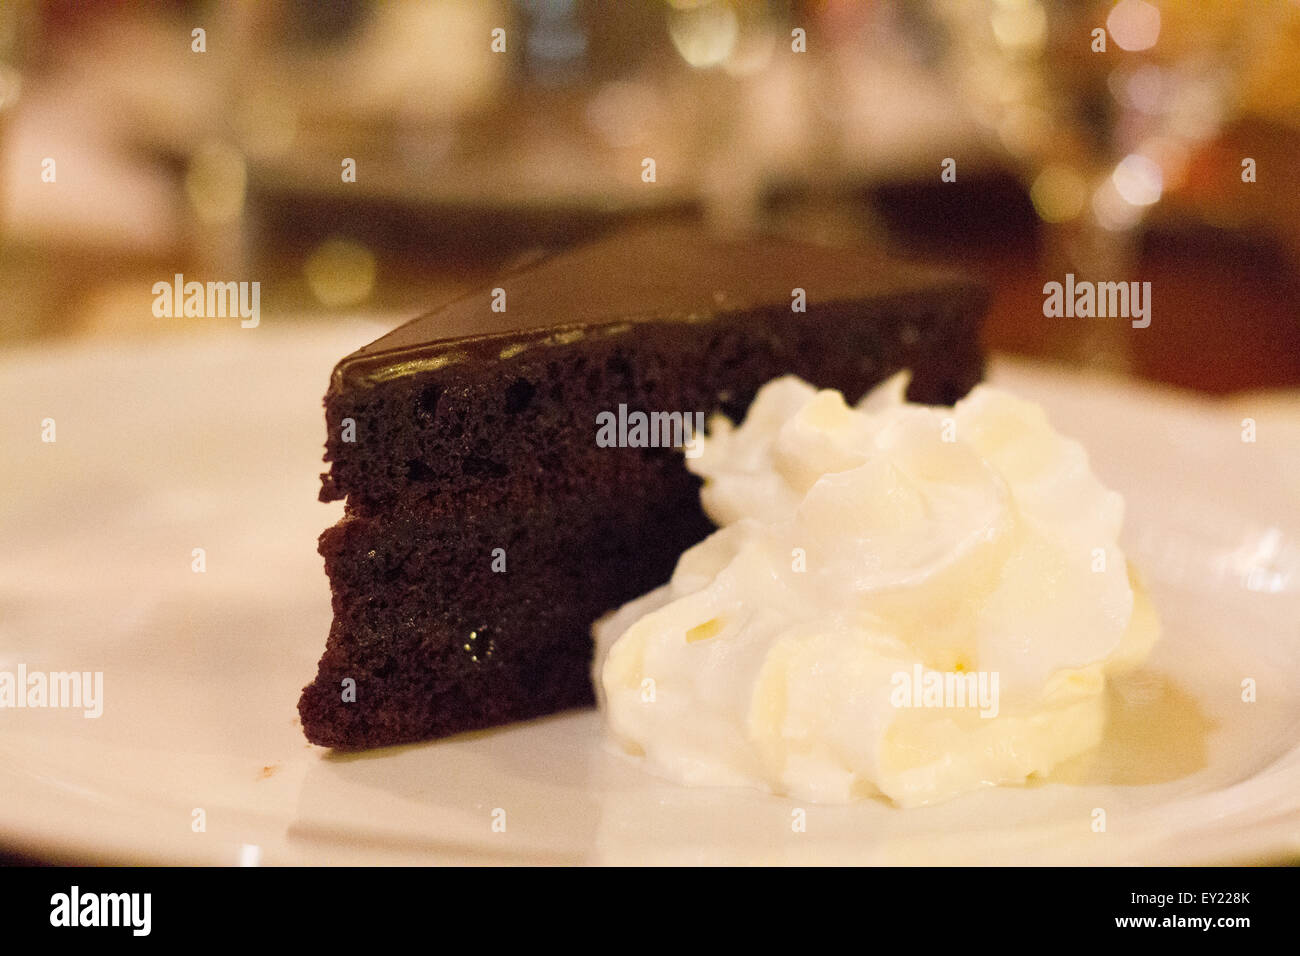 Chocolate cake and cream Stock Photo